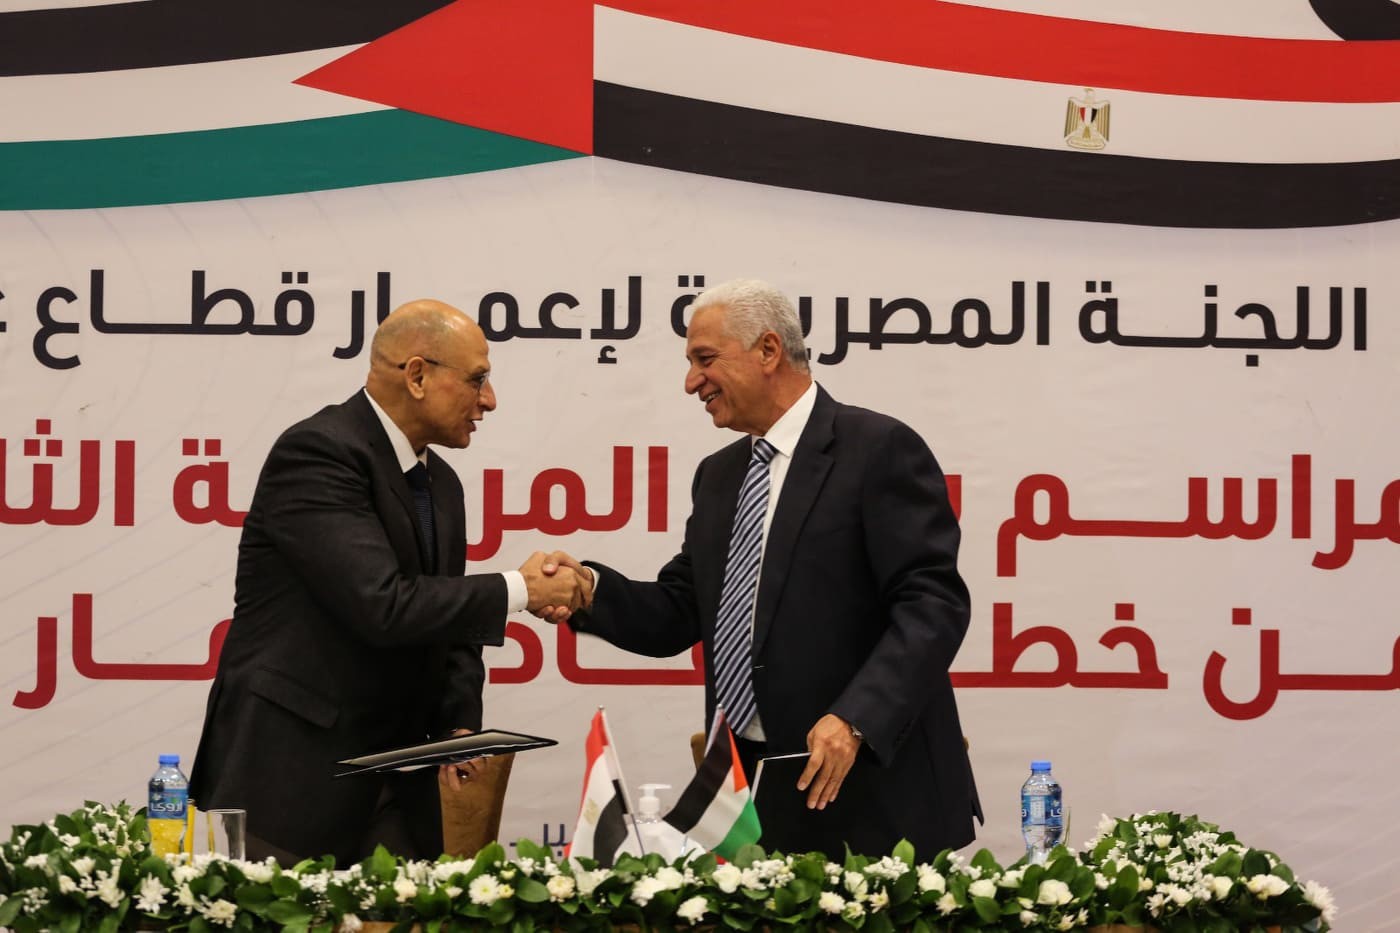 بالفيديو: اللجنة المصرية تحتفل ببدء المرحلة الثانية من إعادة إعمار غزة